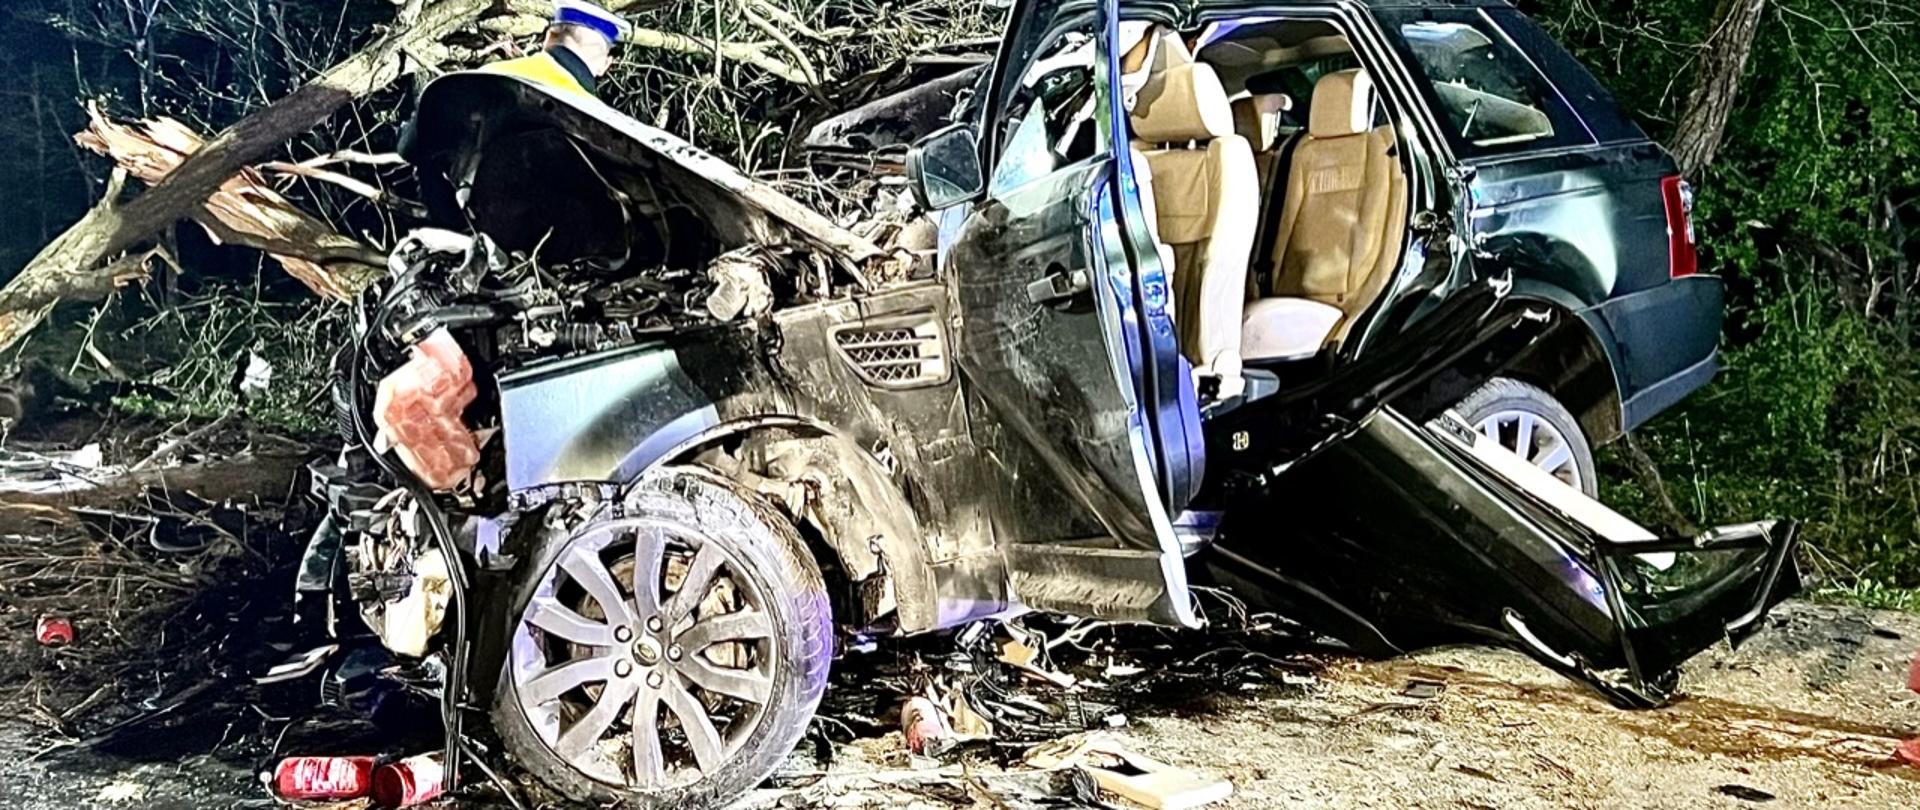 Na zdjęciu widać zniszczone auto osobowe koloru granatowego. Wnętrze auta jest koloru jasny beż. Za pojazdem widać drzewa i umundurowanego policjanta prowadzącego czynności dochodzeniowo – śledcze.